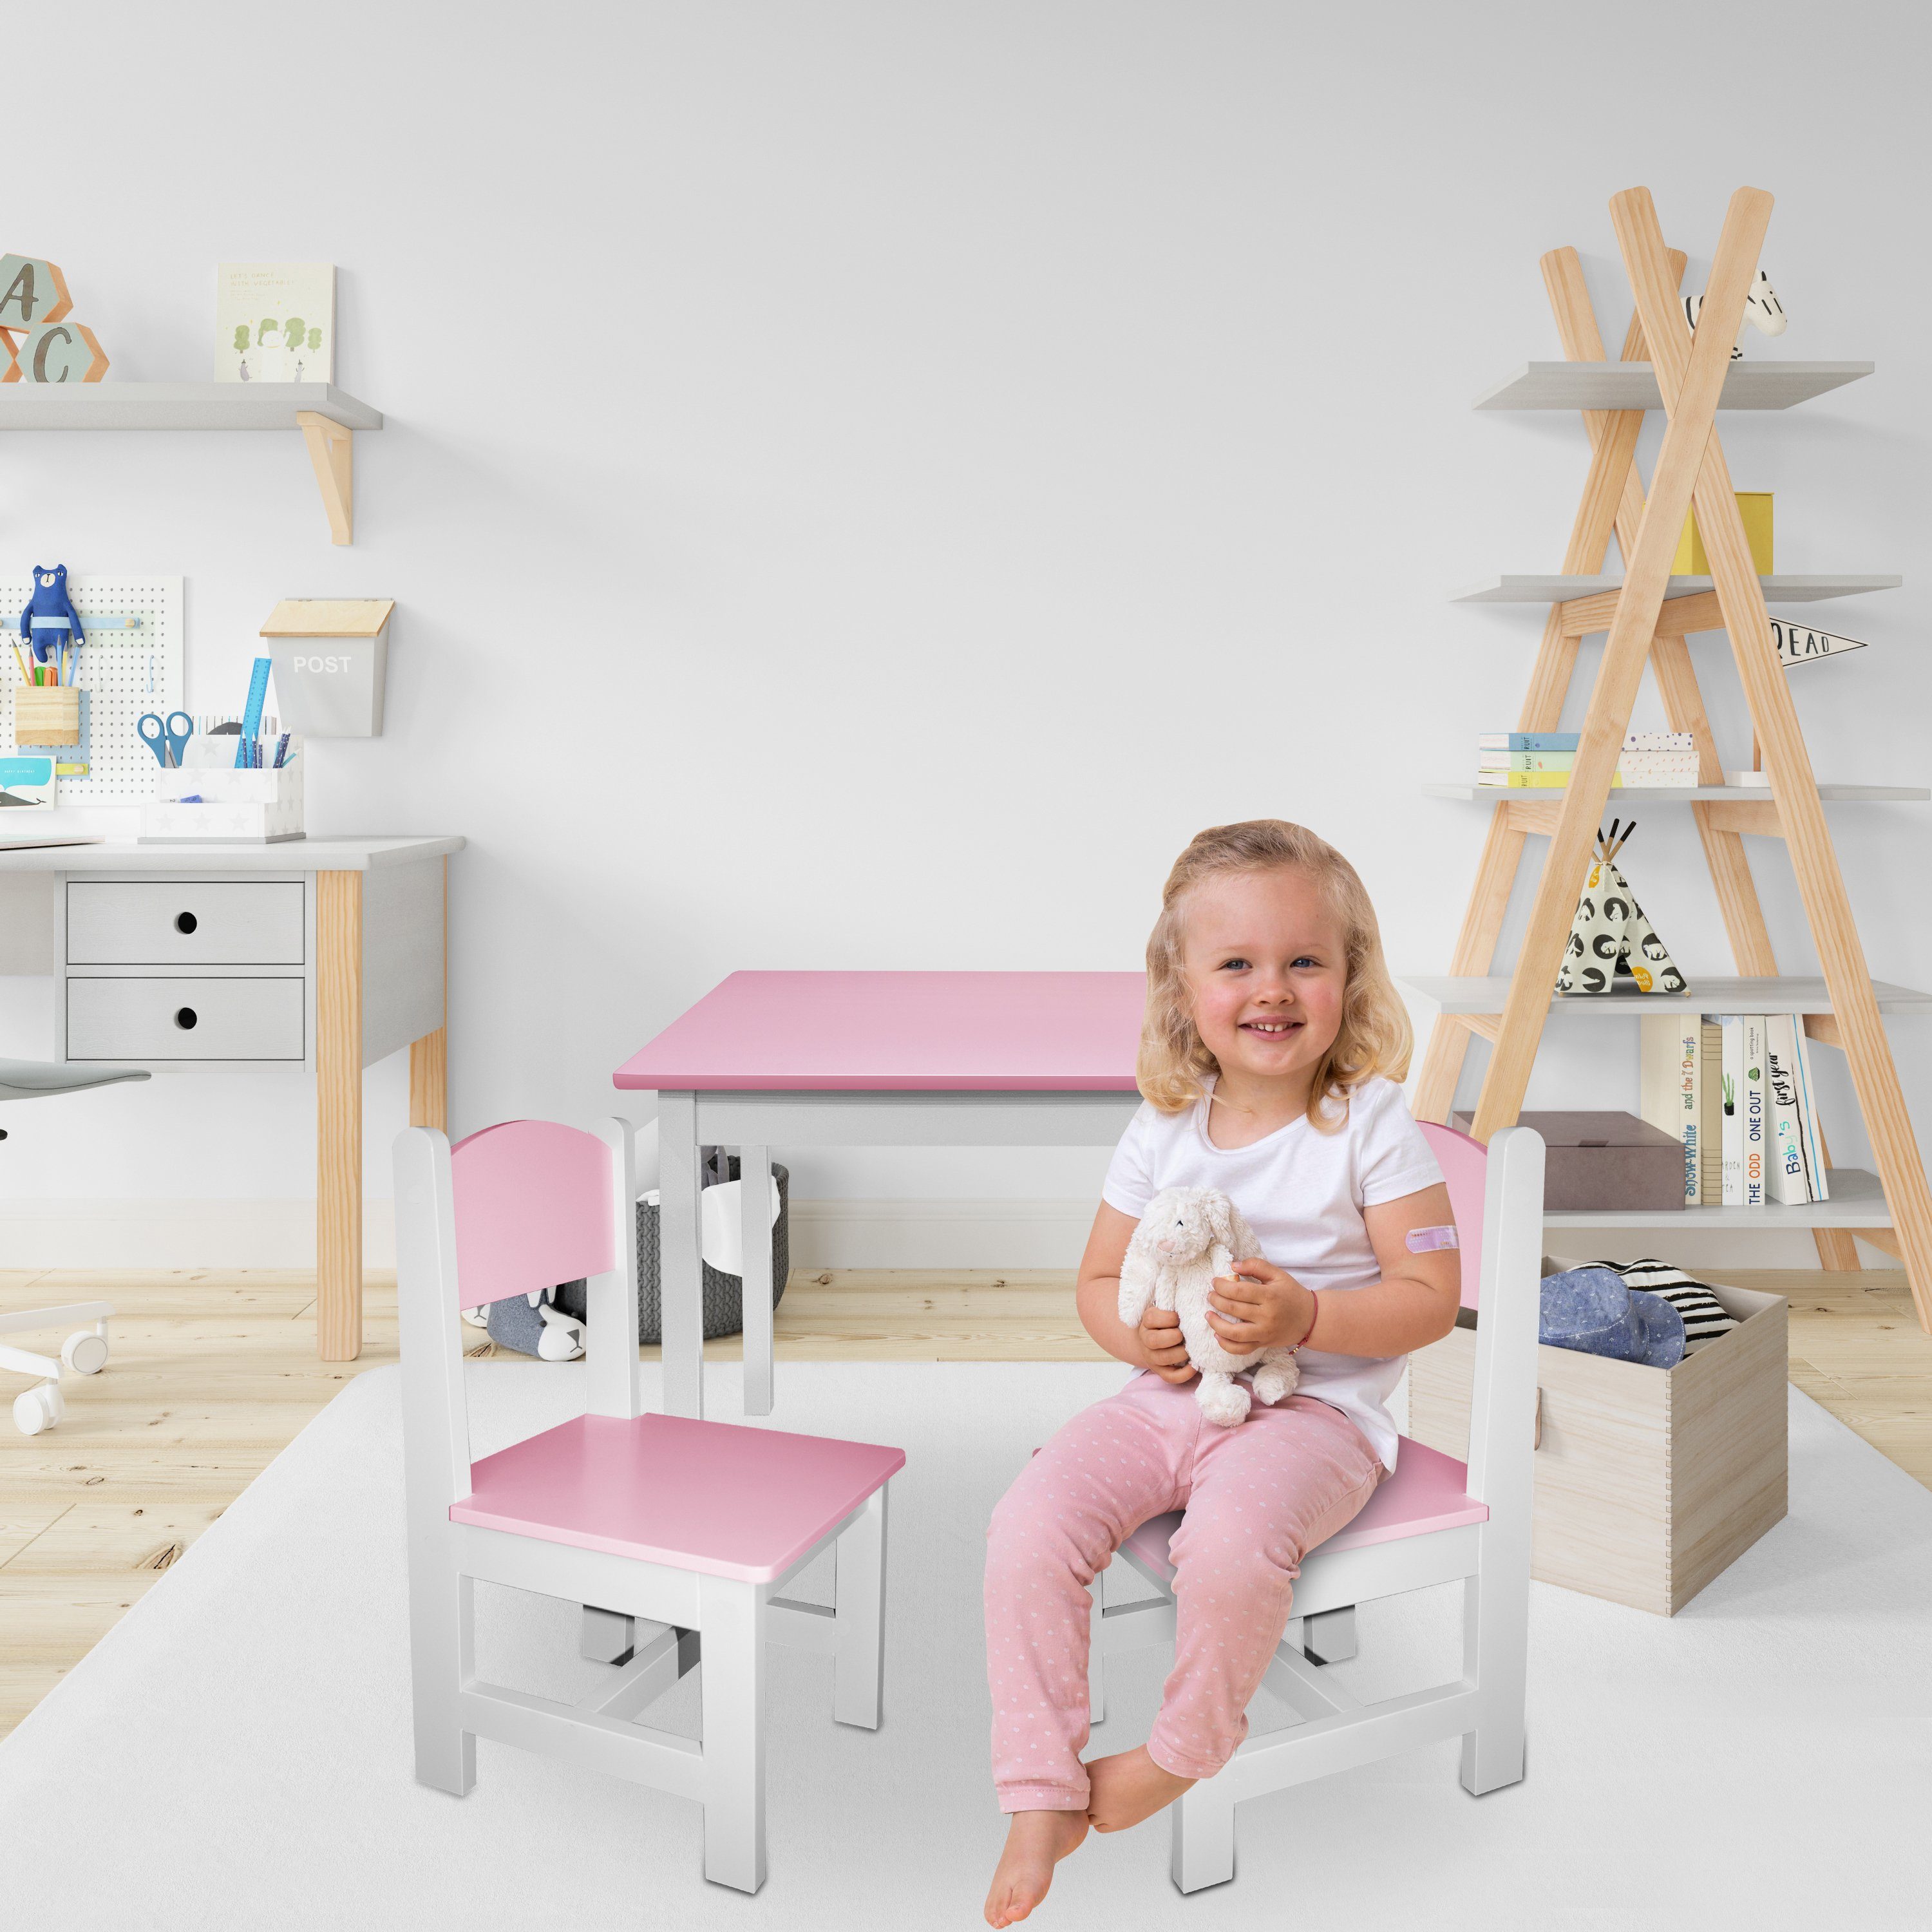 Rosa+Weiß Maltisch Kindermöbelset habeig Hocker 2 Kindertisch Stühle Kindersitzgruppe & 60x50x50cm